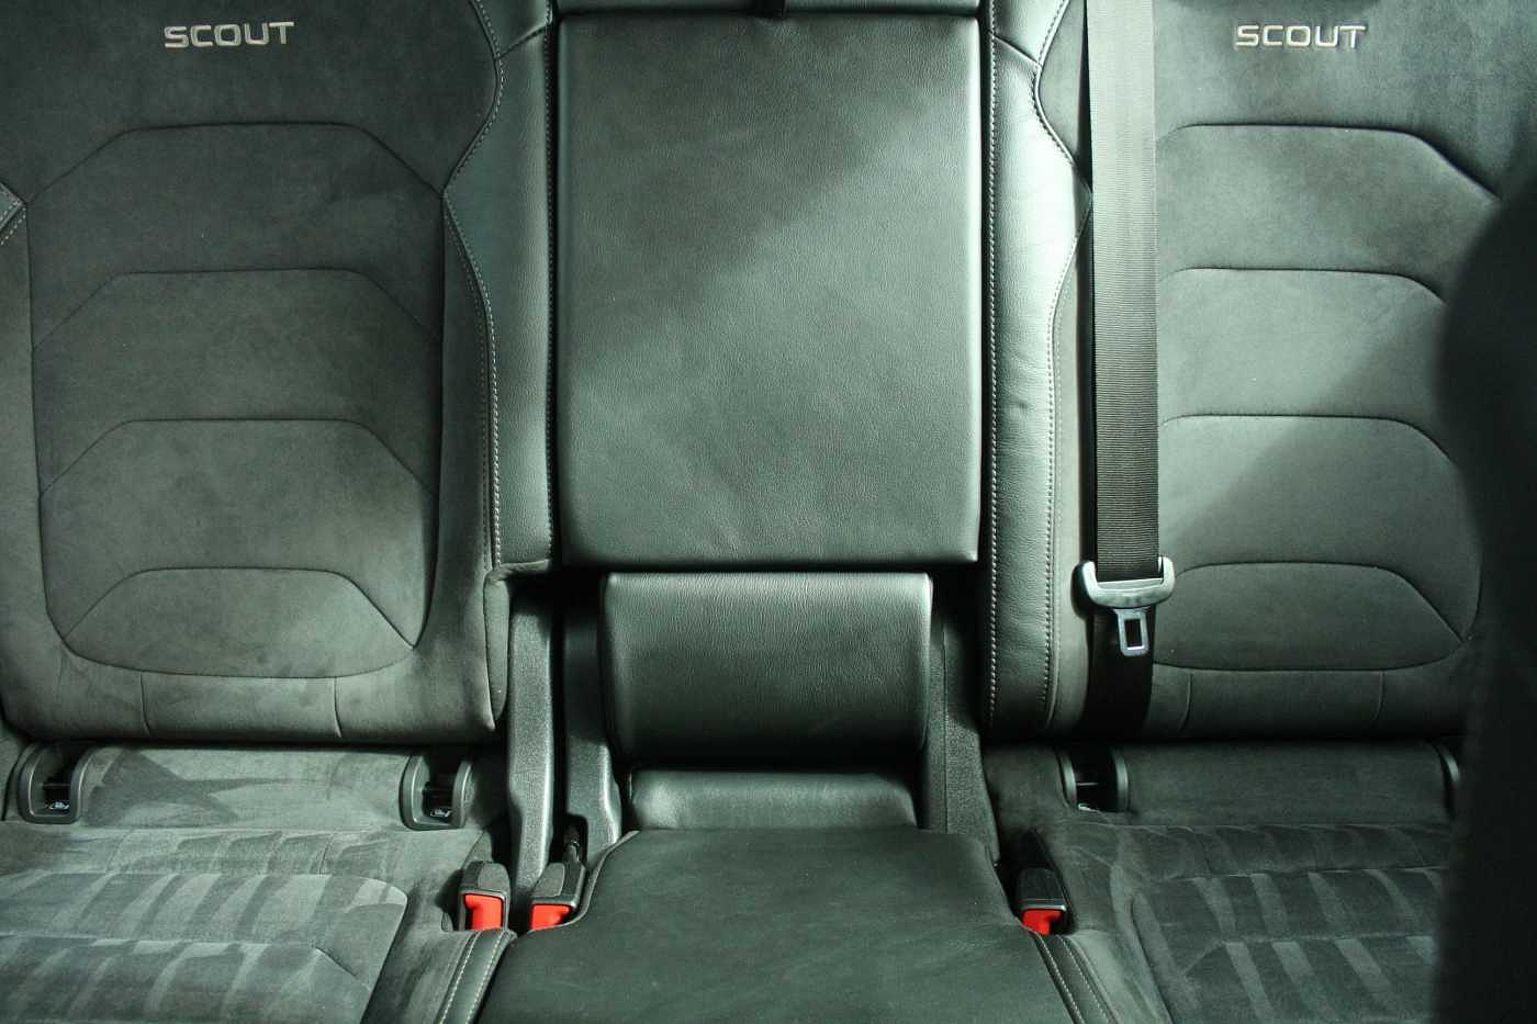 SKODA Kodiaq 2.0TDI 150ps 4X4 Scout 7 seats SCR SUV